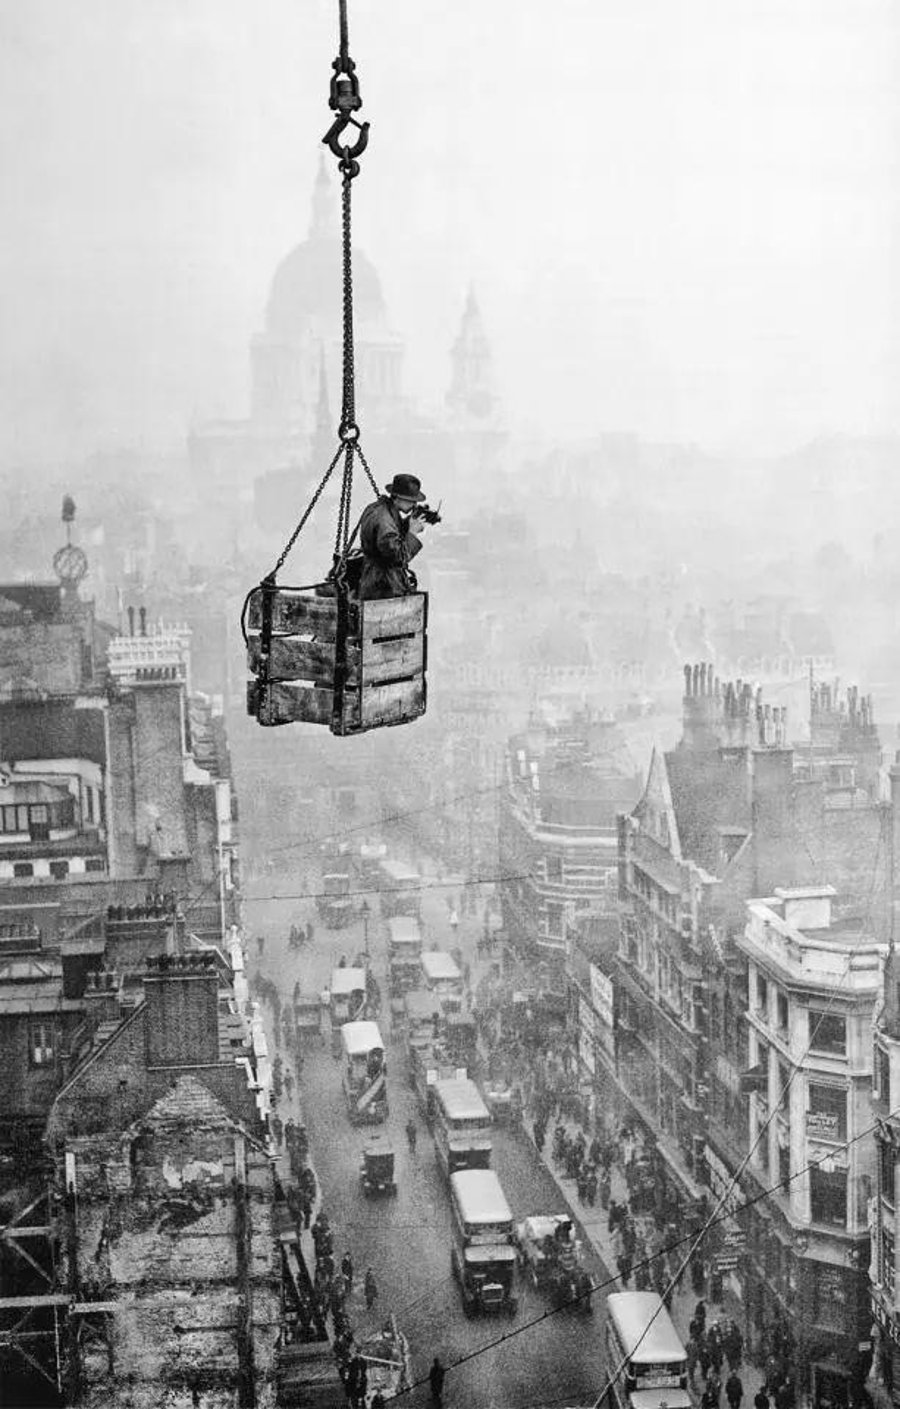 1929, בריטניה: הצלם ר.ג. סלומון מצלם את העיר לונדון, מתוך ארגז המתנדנד בשמי העיר ותלוי על מנוף